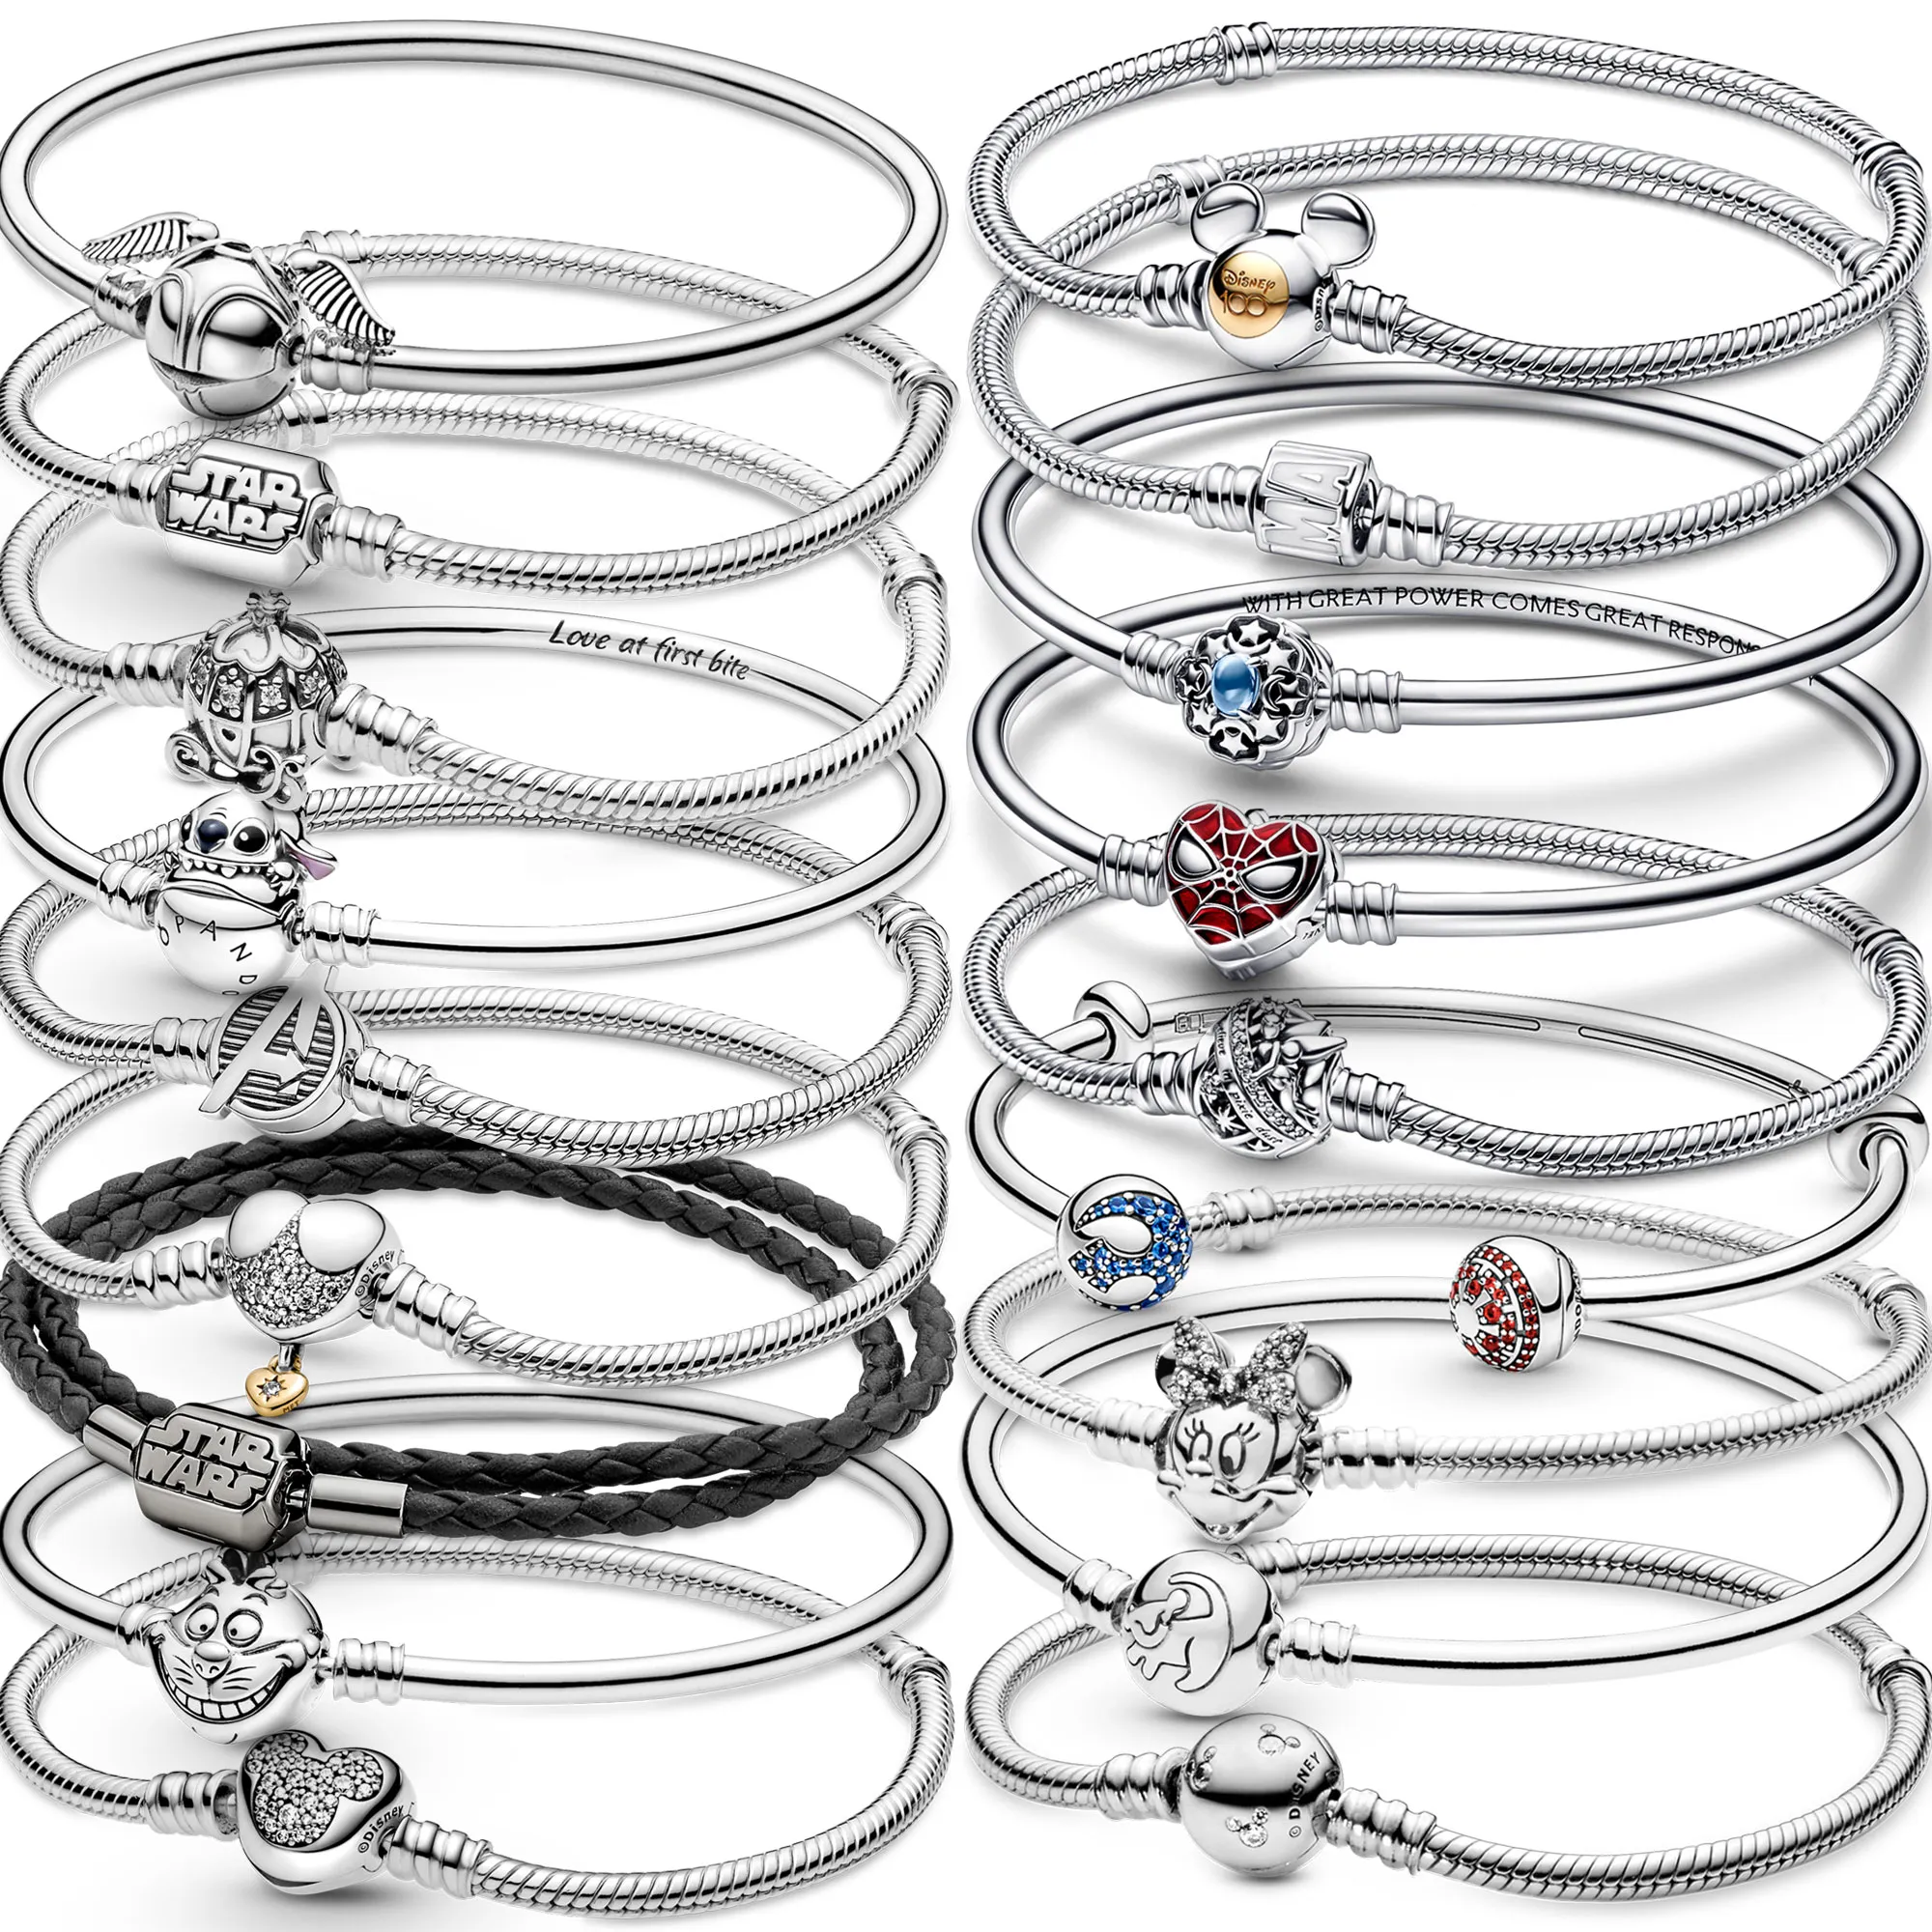 La nueva y popular pulsera Pandora de plata esterlina 925 es adecuada para la producción de joyería femenina clásica, accesorios de moda, carga al por mayor gratuita